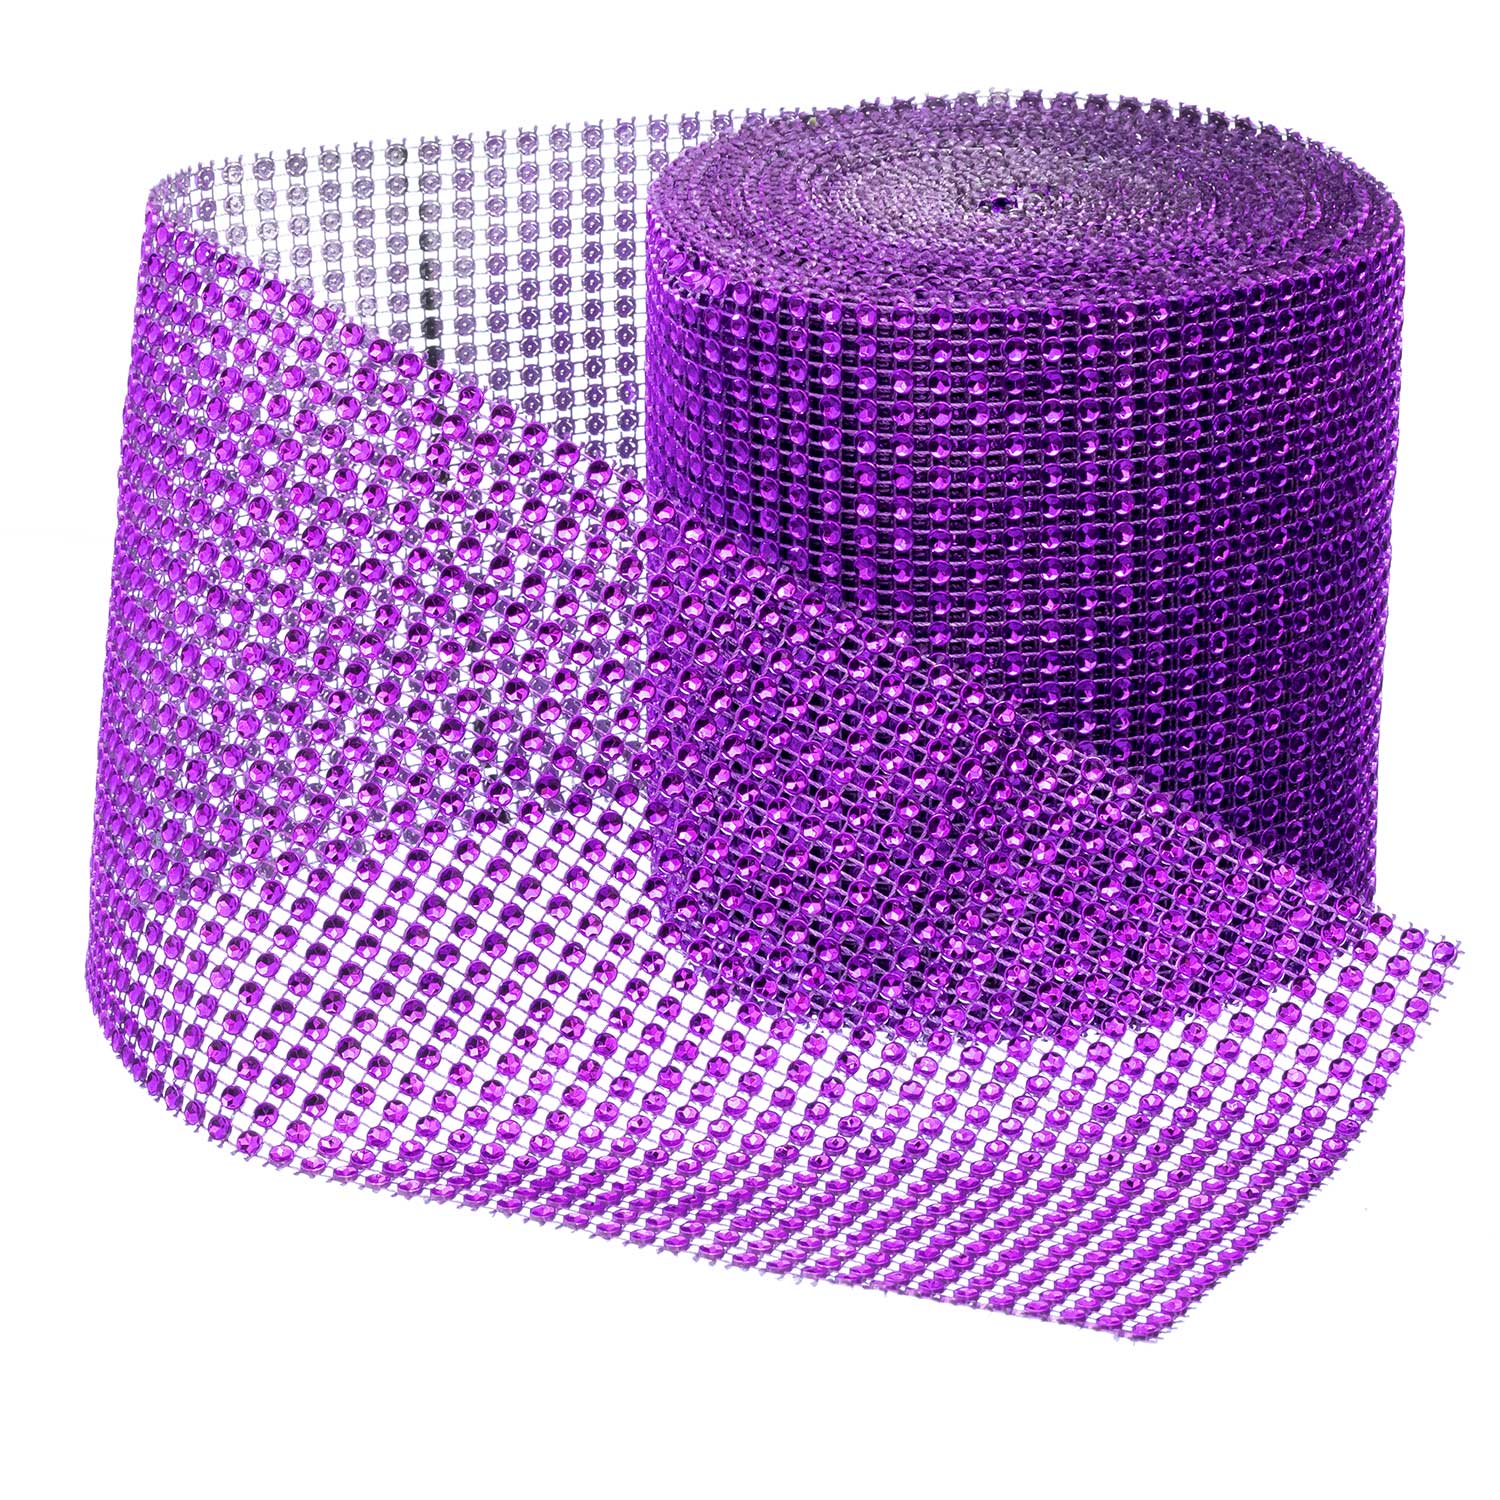 Image1-purple